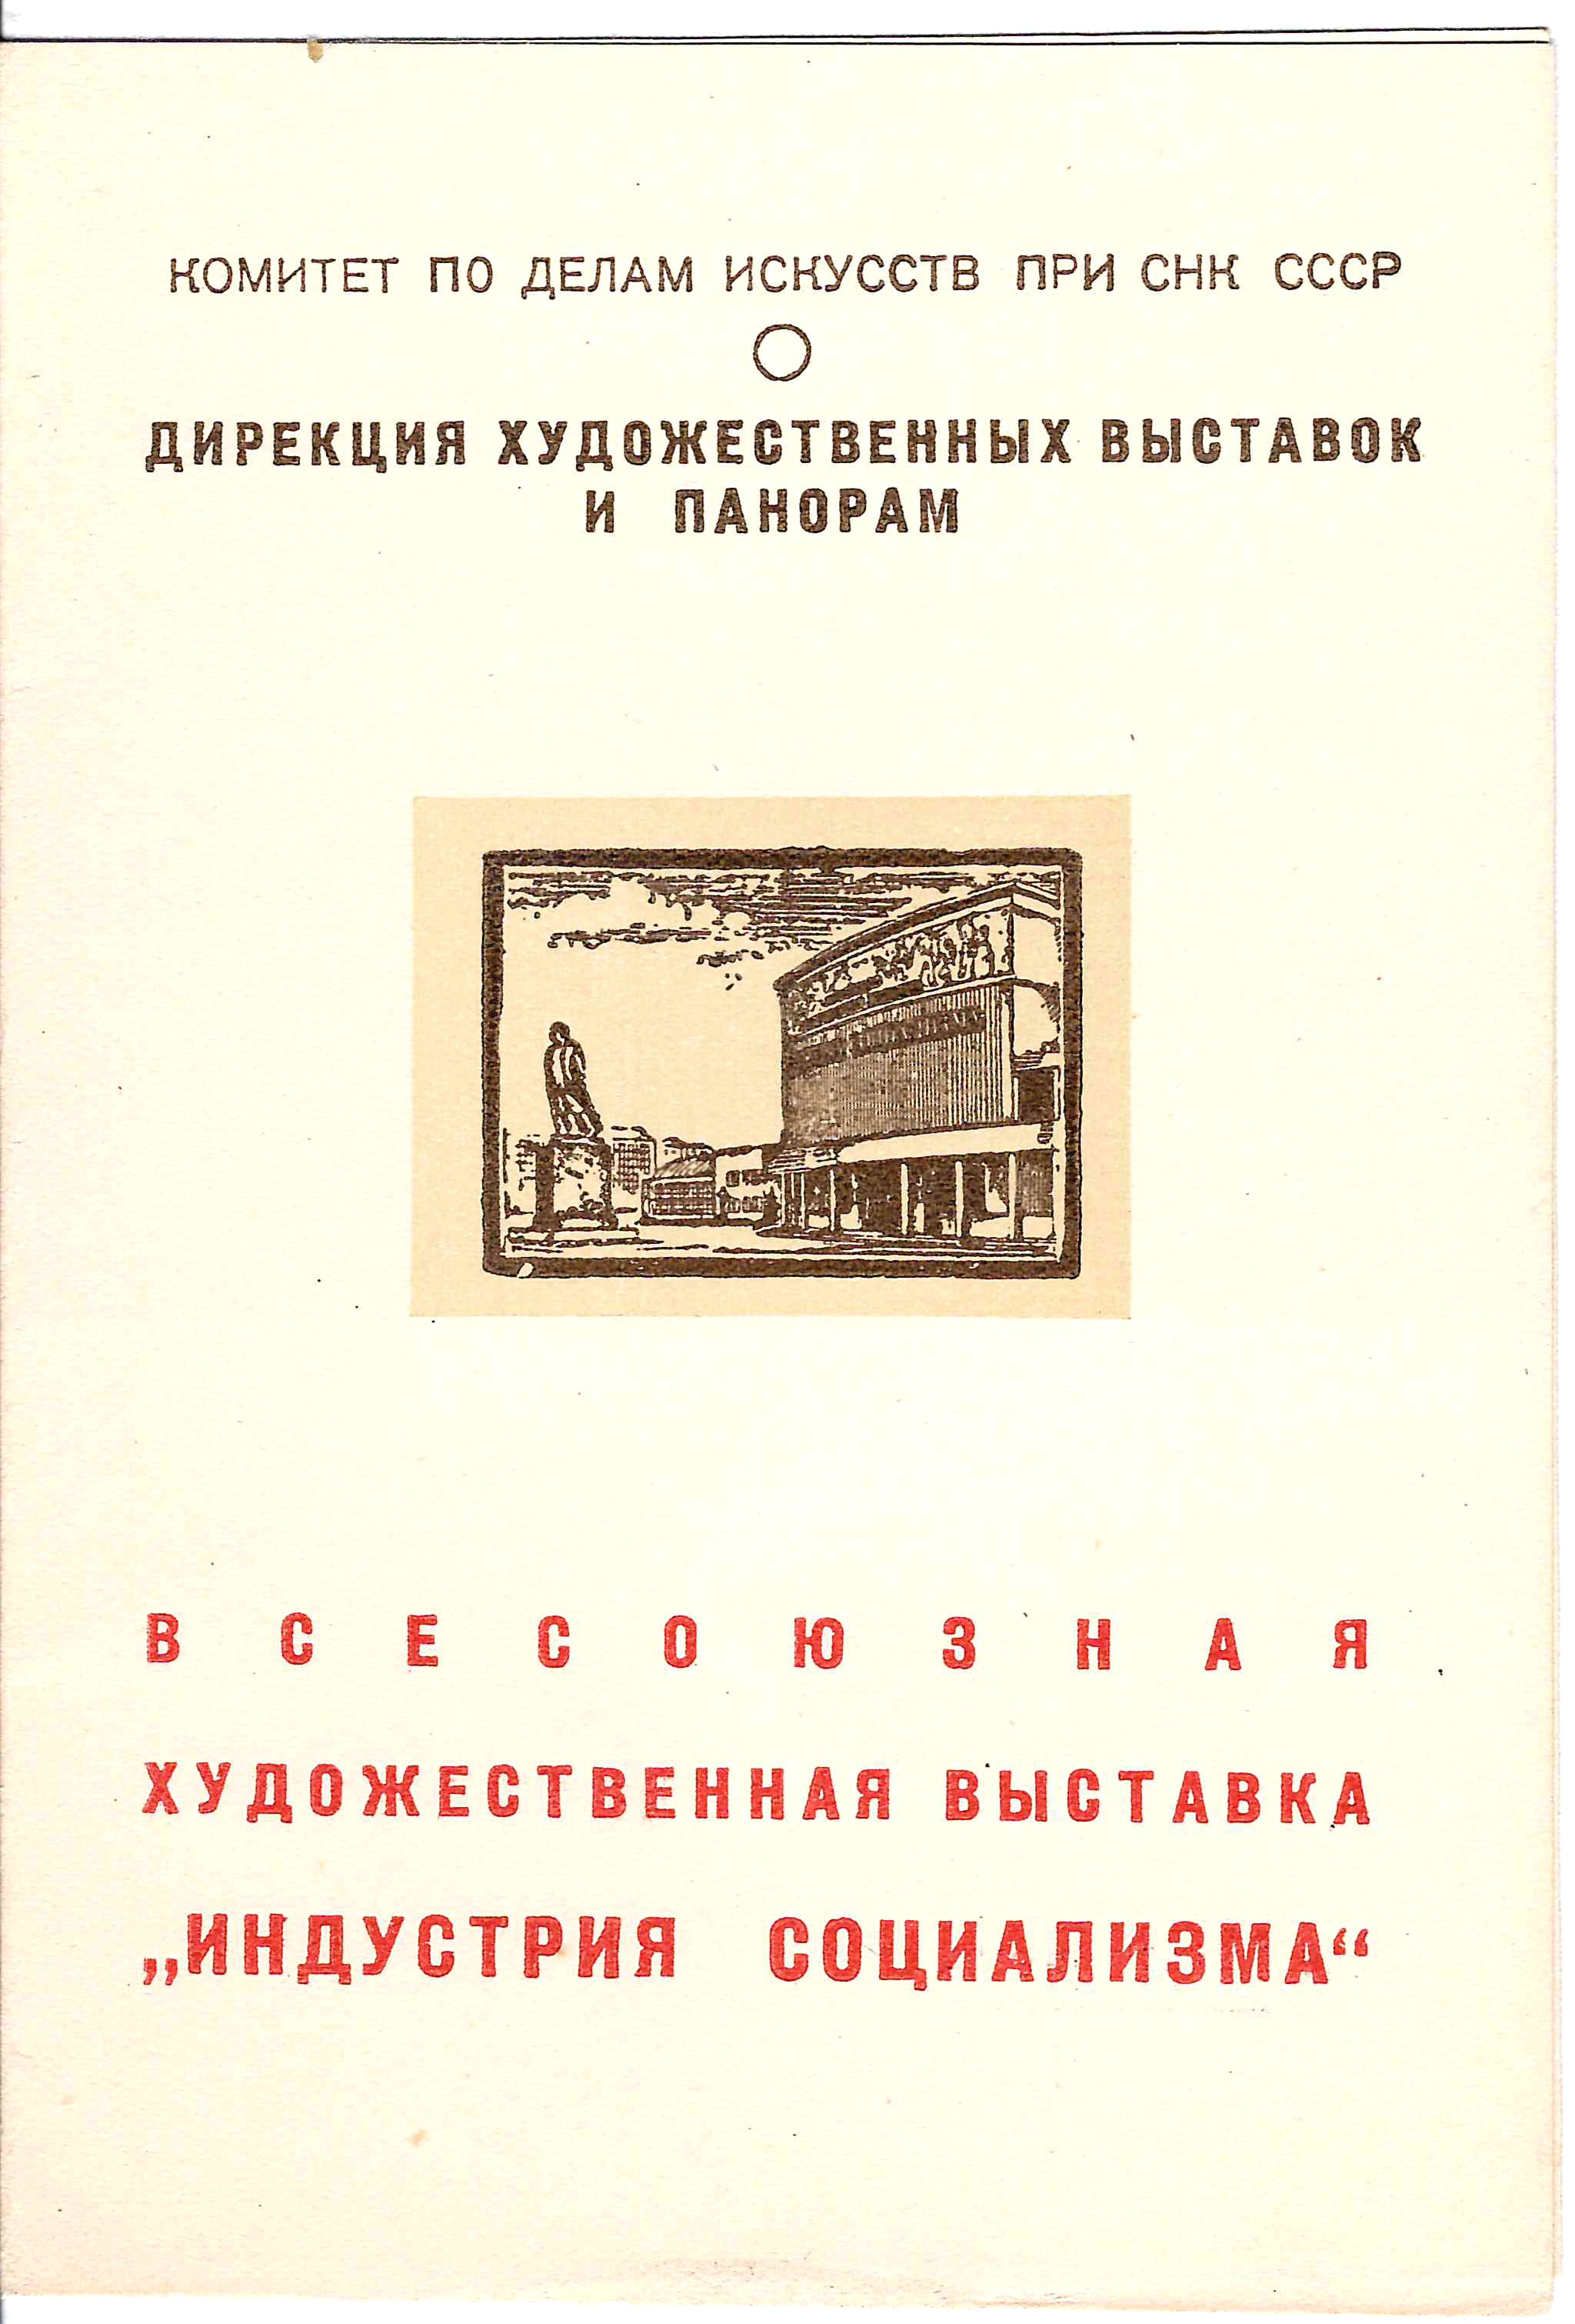 Приглашение на общественный просмотр всесоюзной художественной выставки «Индустрия социализма» 11 февраля 1941 года.